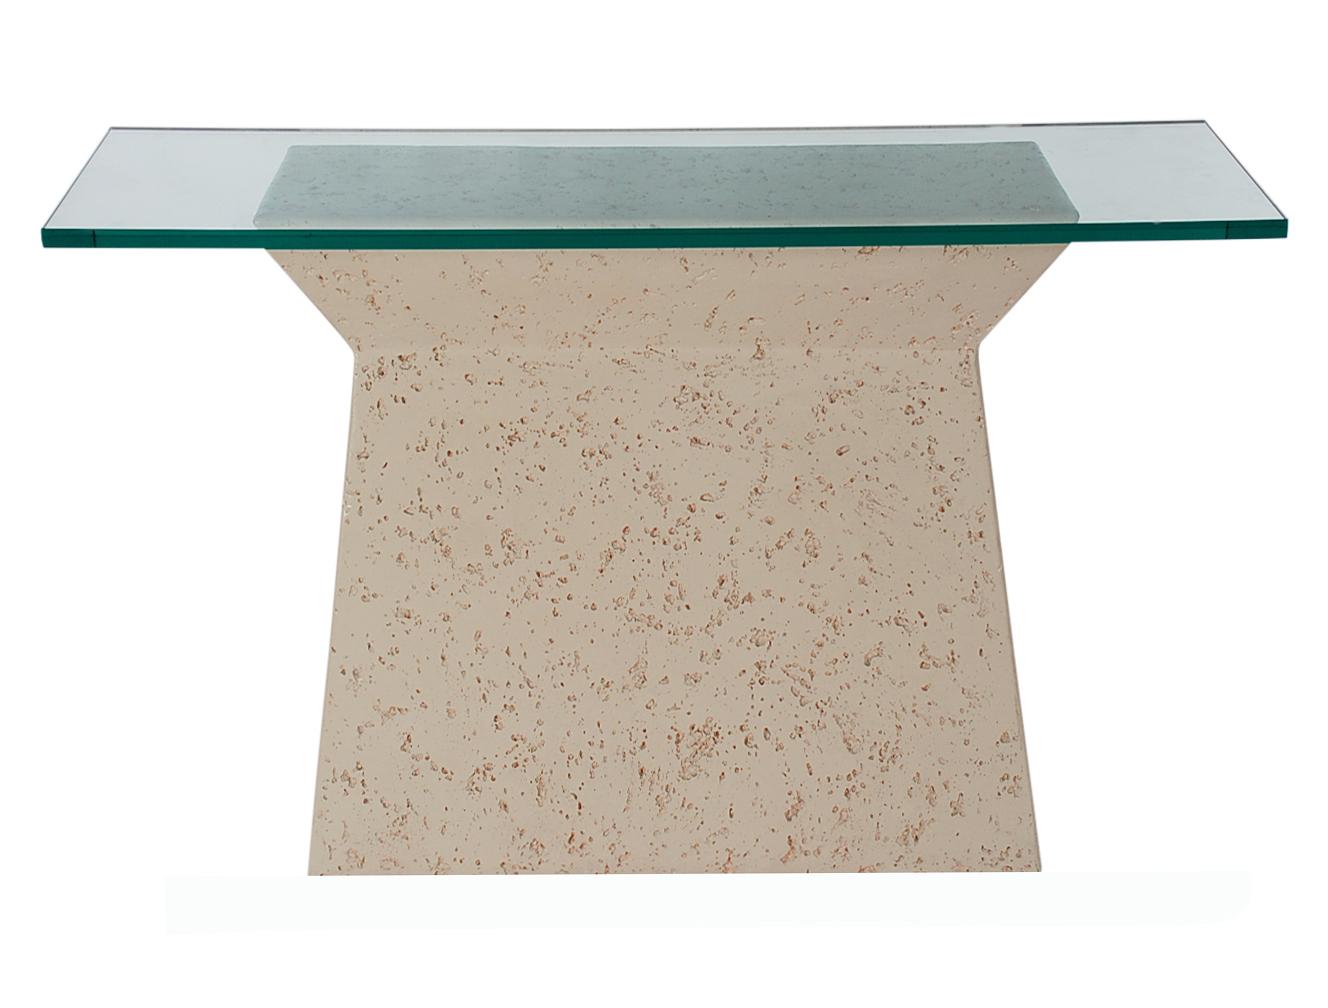 Ein wunderschöner Konsolentisch in moderner Form im Stil von Sirmos. Dieser Tisch hat eine strukturierte, weiße Harzbasis mit einer sehr dicken Glasplatte. Sehr sauber und gut gepflegt.